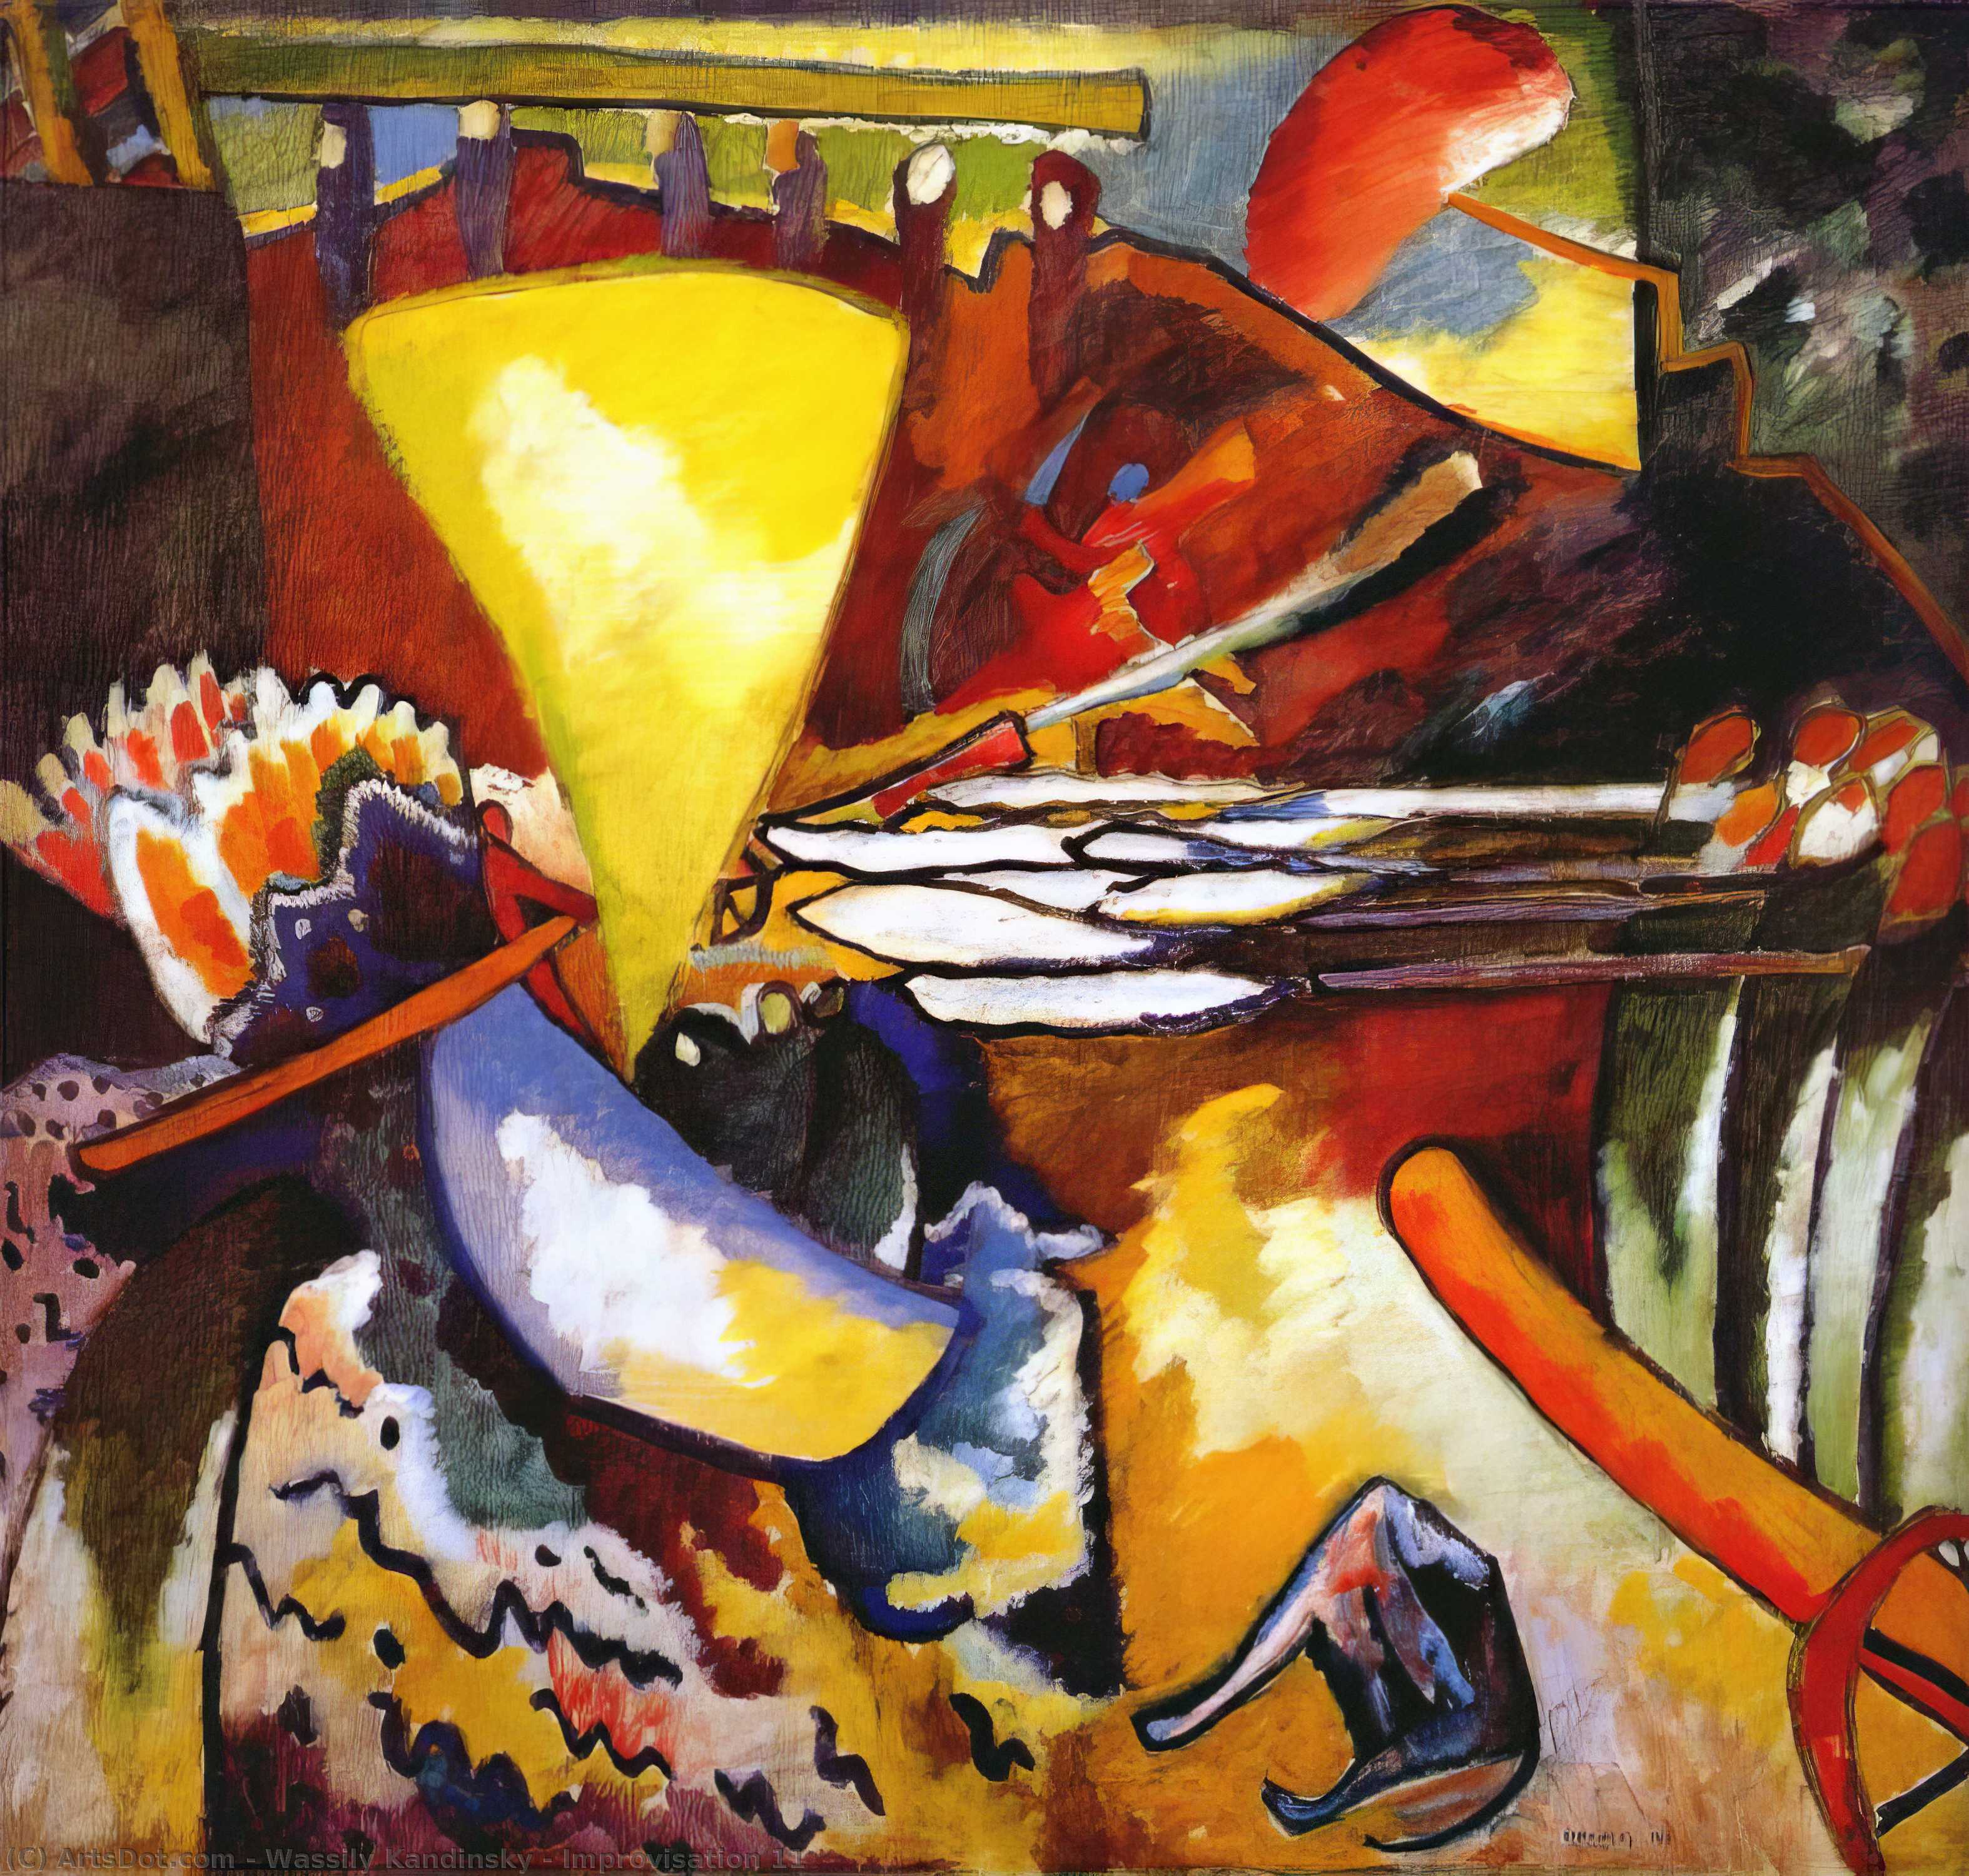 WikiOO.org - Encyclopedia of Fine Arts - Maalaus, taideteos Wassily Kandinsky - Improvisation 11